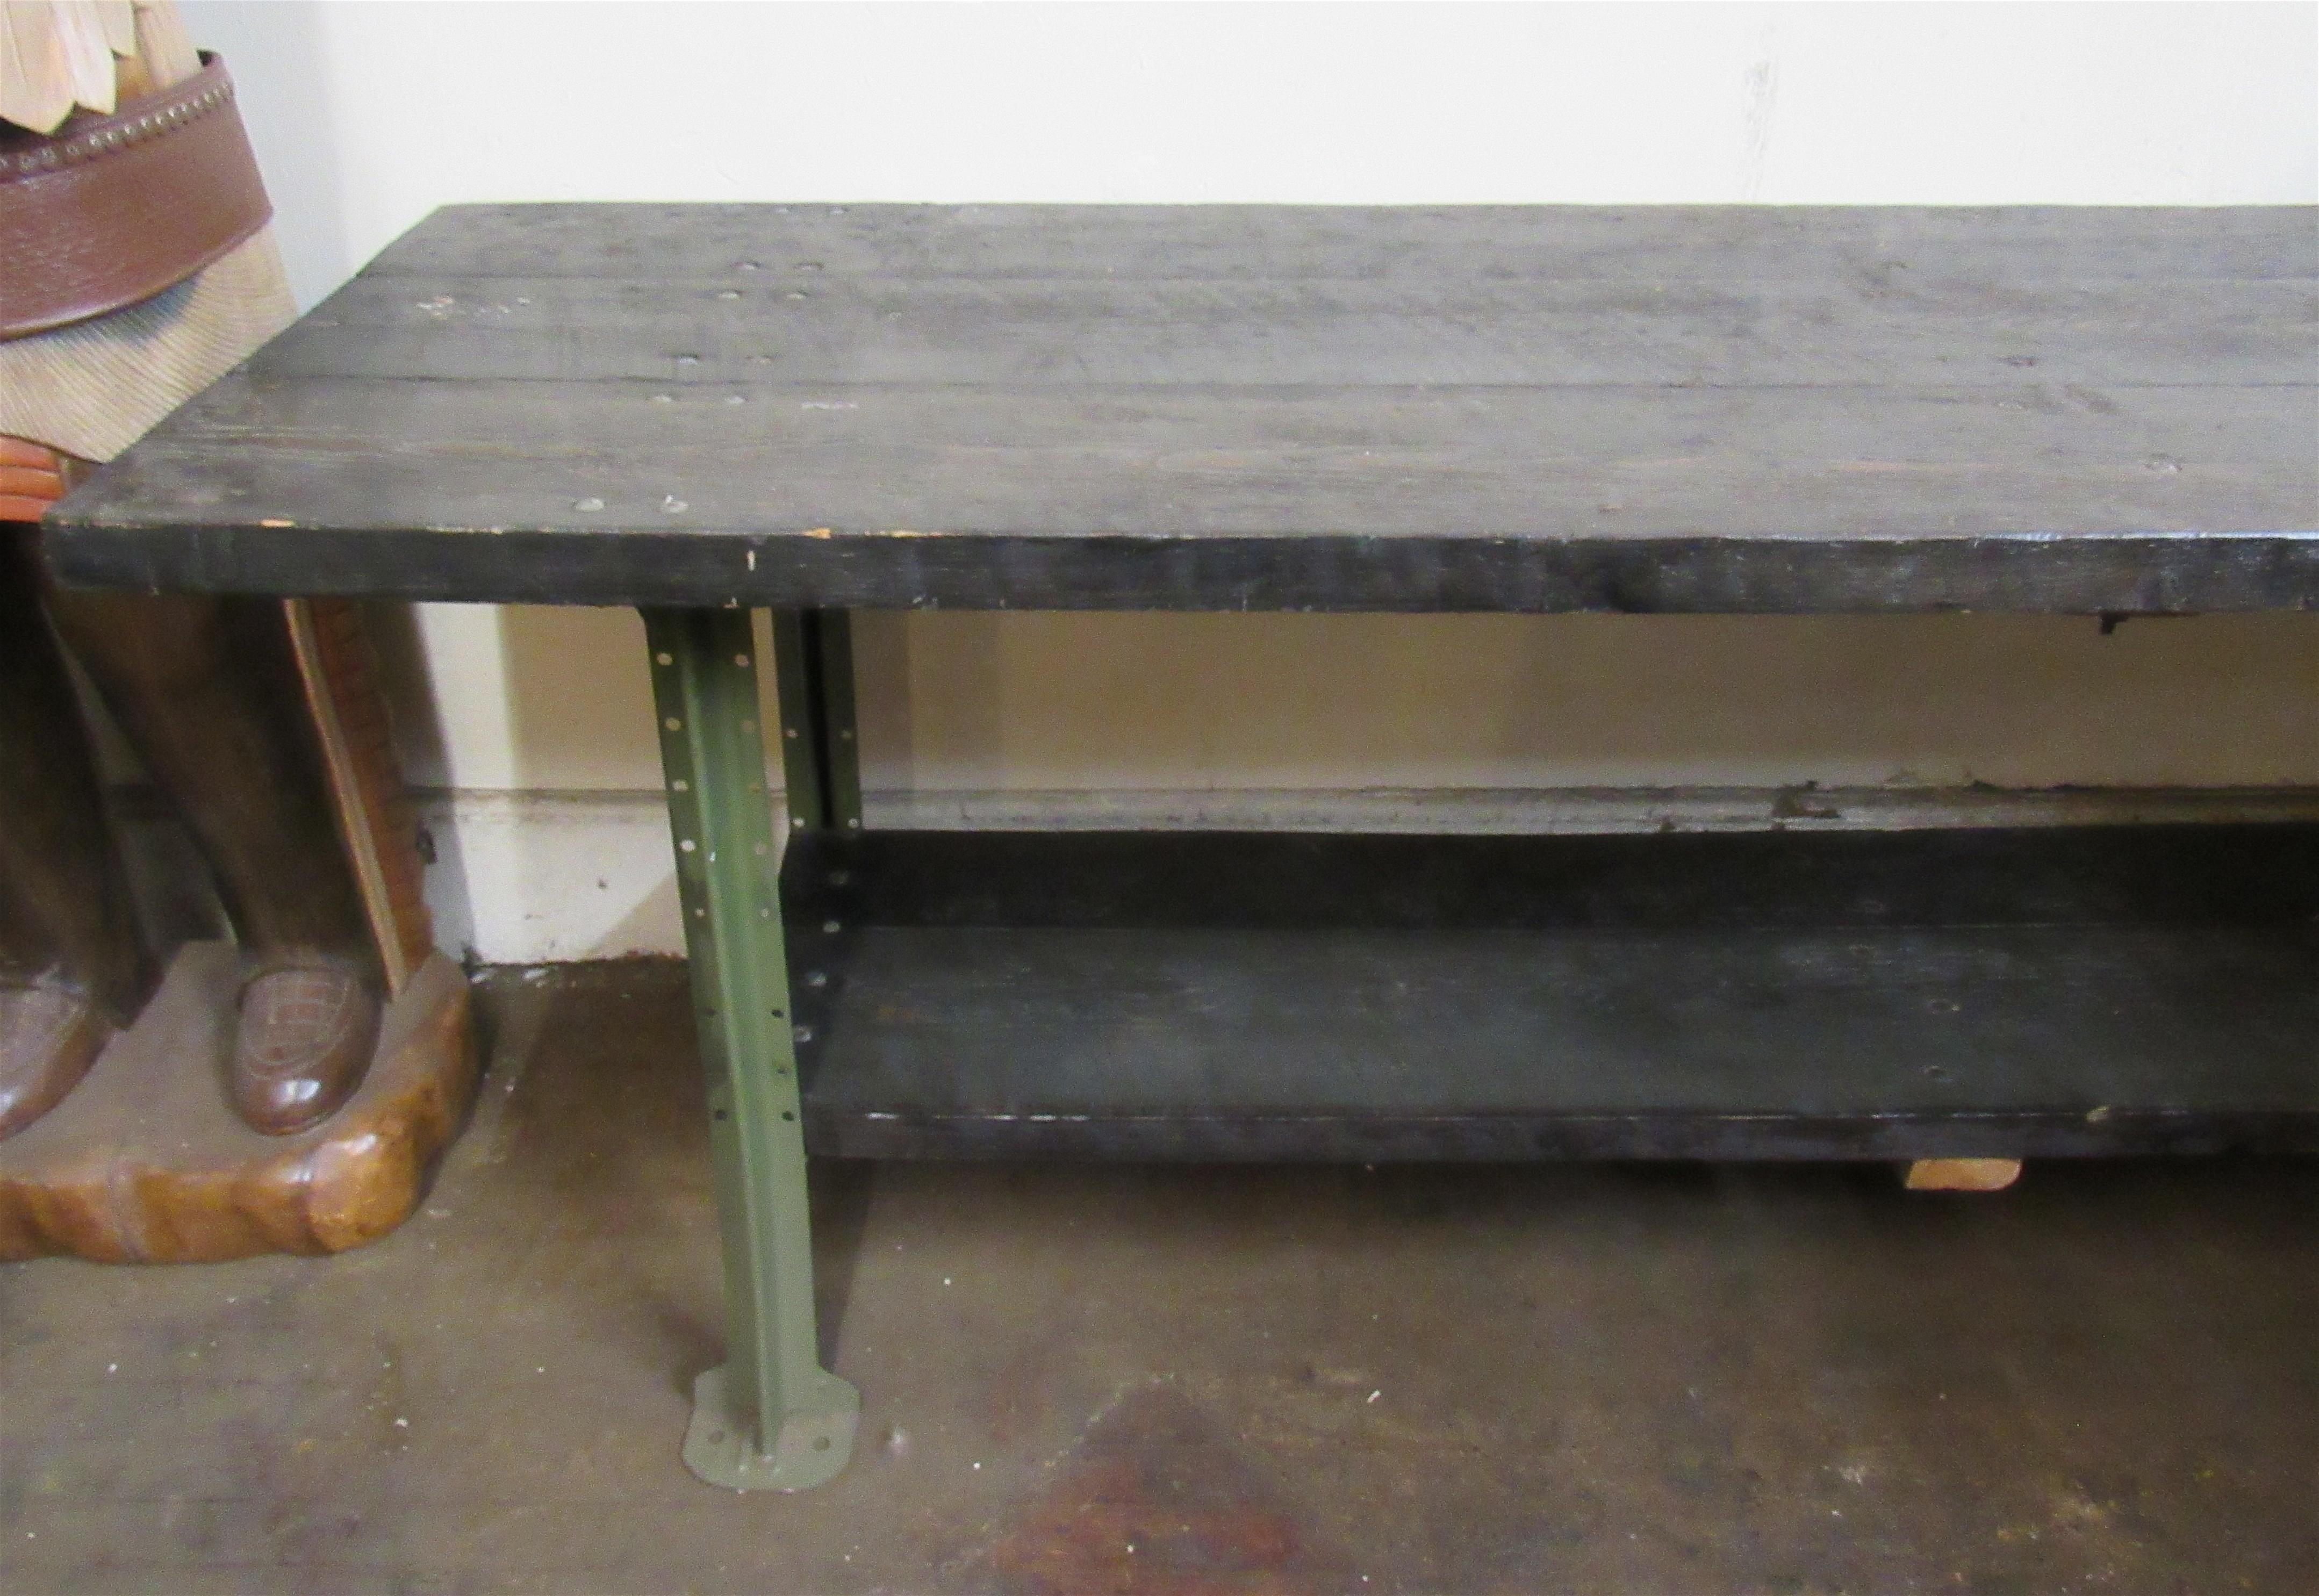 Acht Fuß langer industrieller Werkstatttisch mit dicken Holzplatten auf starkem Eisenrahmen. Hervorragend für Großküchen geeignet.
Bitte bestätigen Sie den Standort NY oder NJ